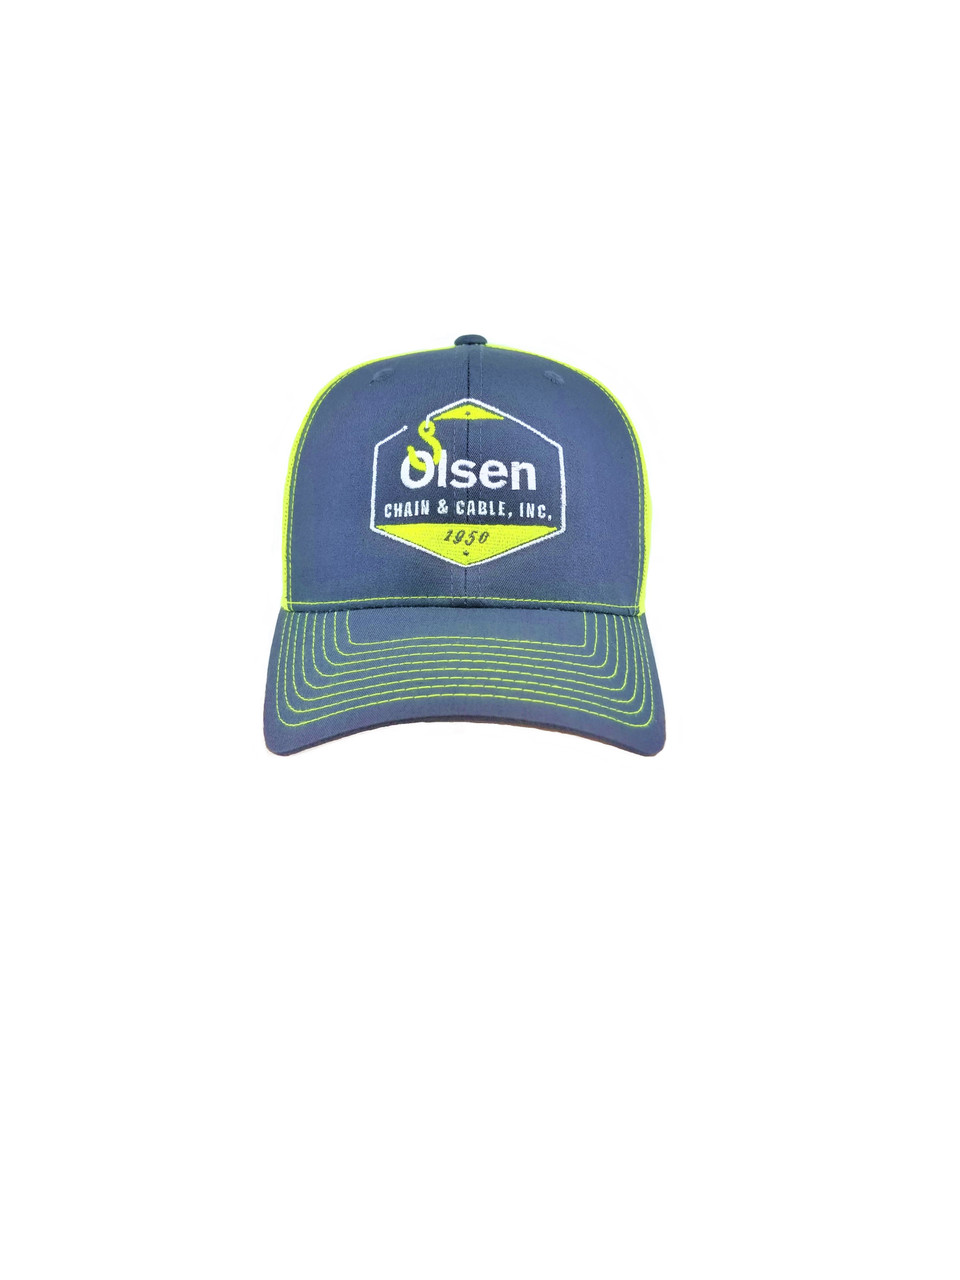 Olsen Chain Hi Vis Baseball Cap